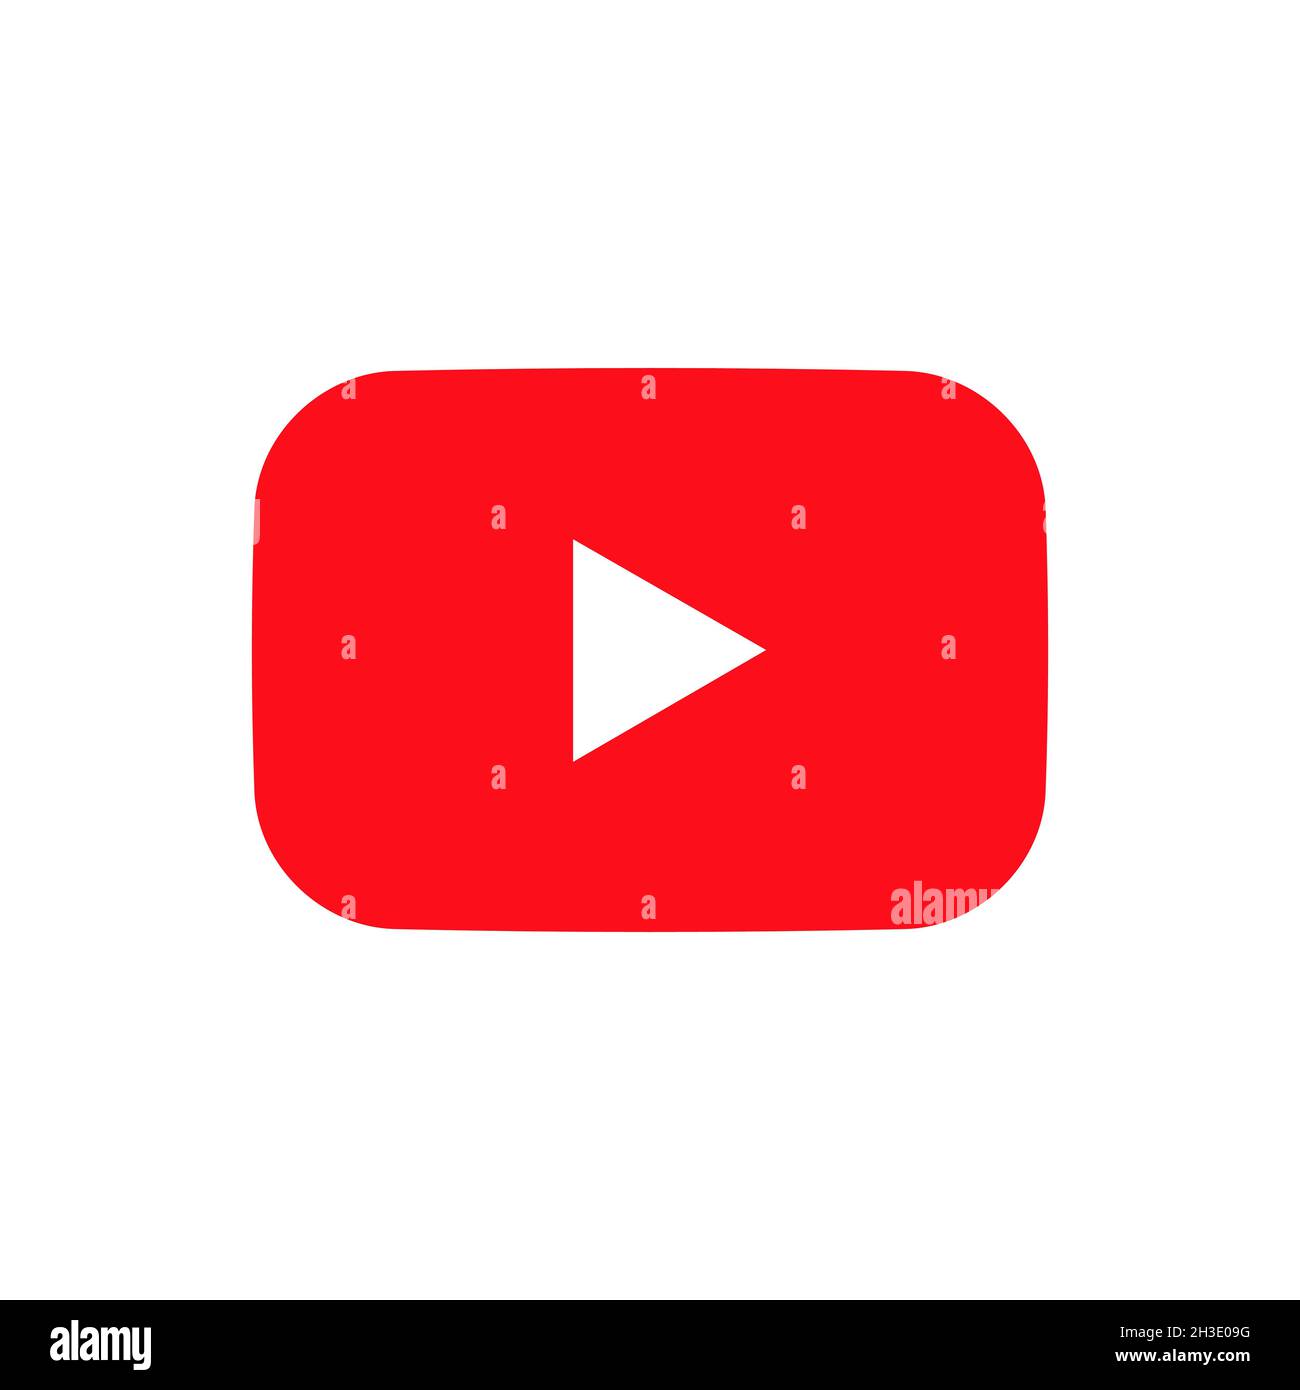 Biểu tượng mạng xã hội YouTube trên nền trắng là một trong số những biểu tượng phổ biến nhất trên thế giới. Hãy bấm vào hình ảnh này để khám phá đầy đủ về YouTube và những tính năng hấp dẫn của mạng xã hội này.